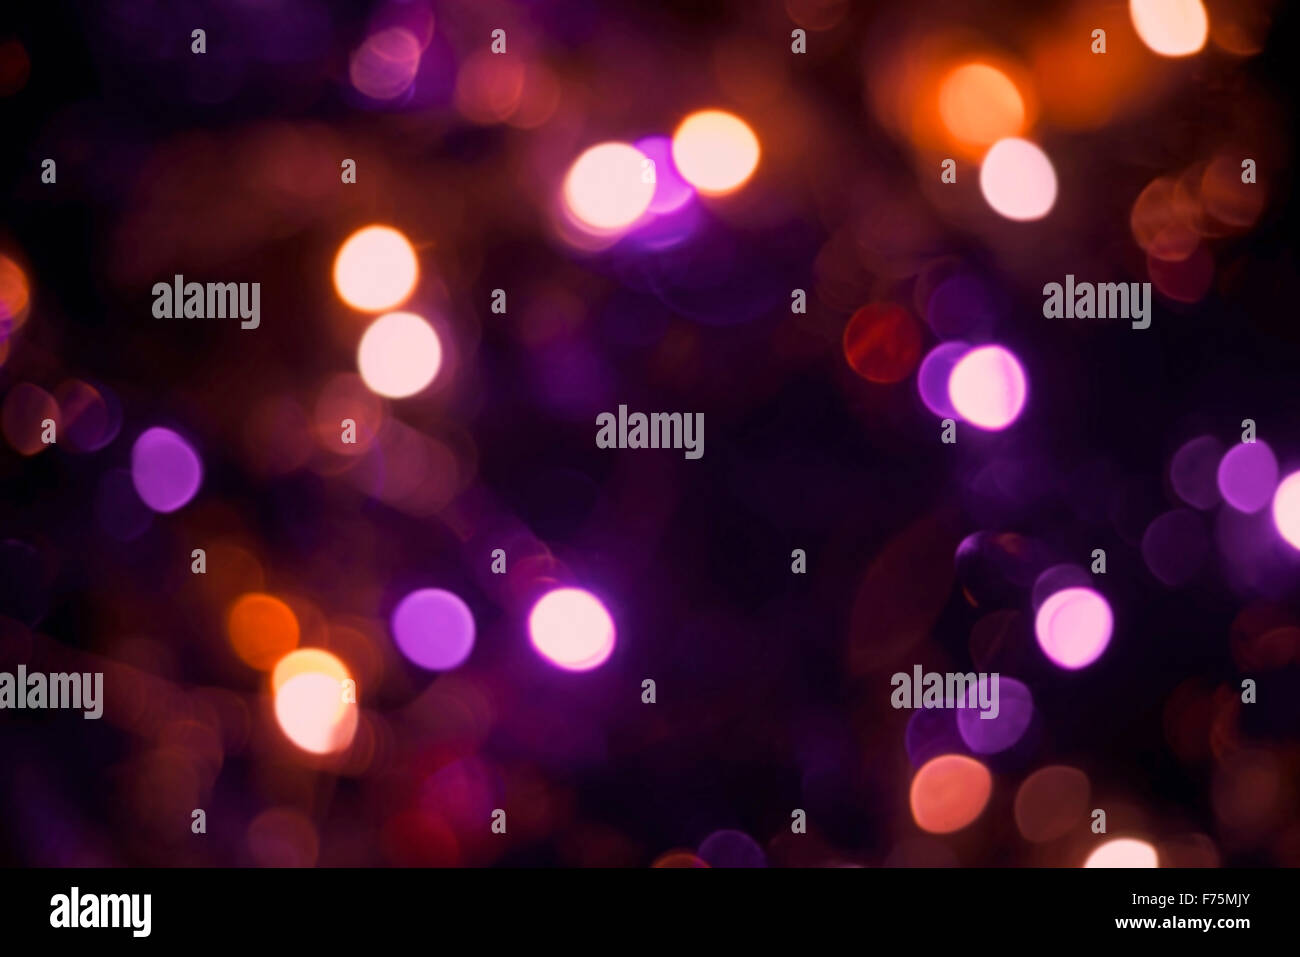 Weihnachtsbeleuchtung Dekoration mit Blur-Effekt, Urlaub Partei Hintergrund. Ideal für Grußkarte, Einladung oder web Stockfoto